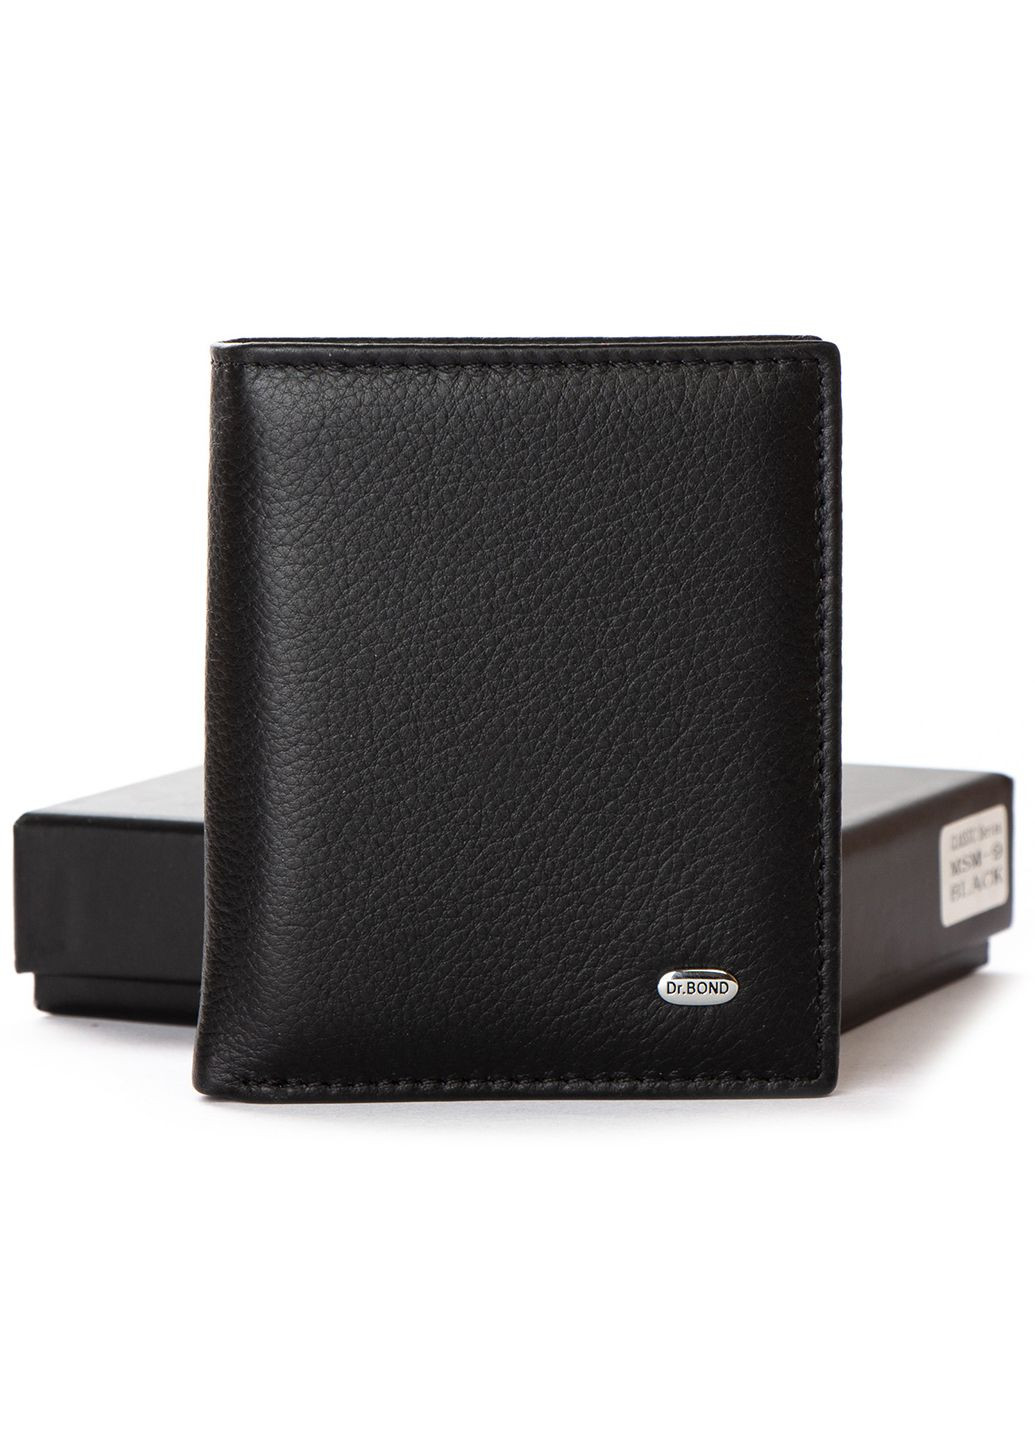 Мужской кожаный кошелек с зажимом на магните Dr. Bond msm-9 (279756411)